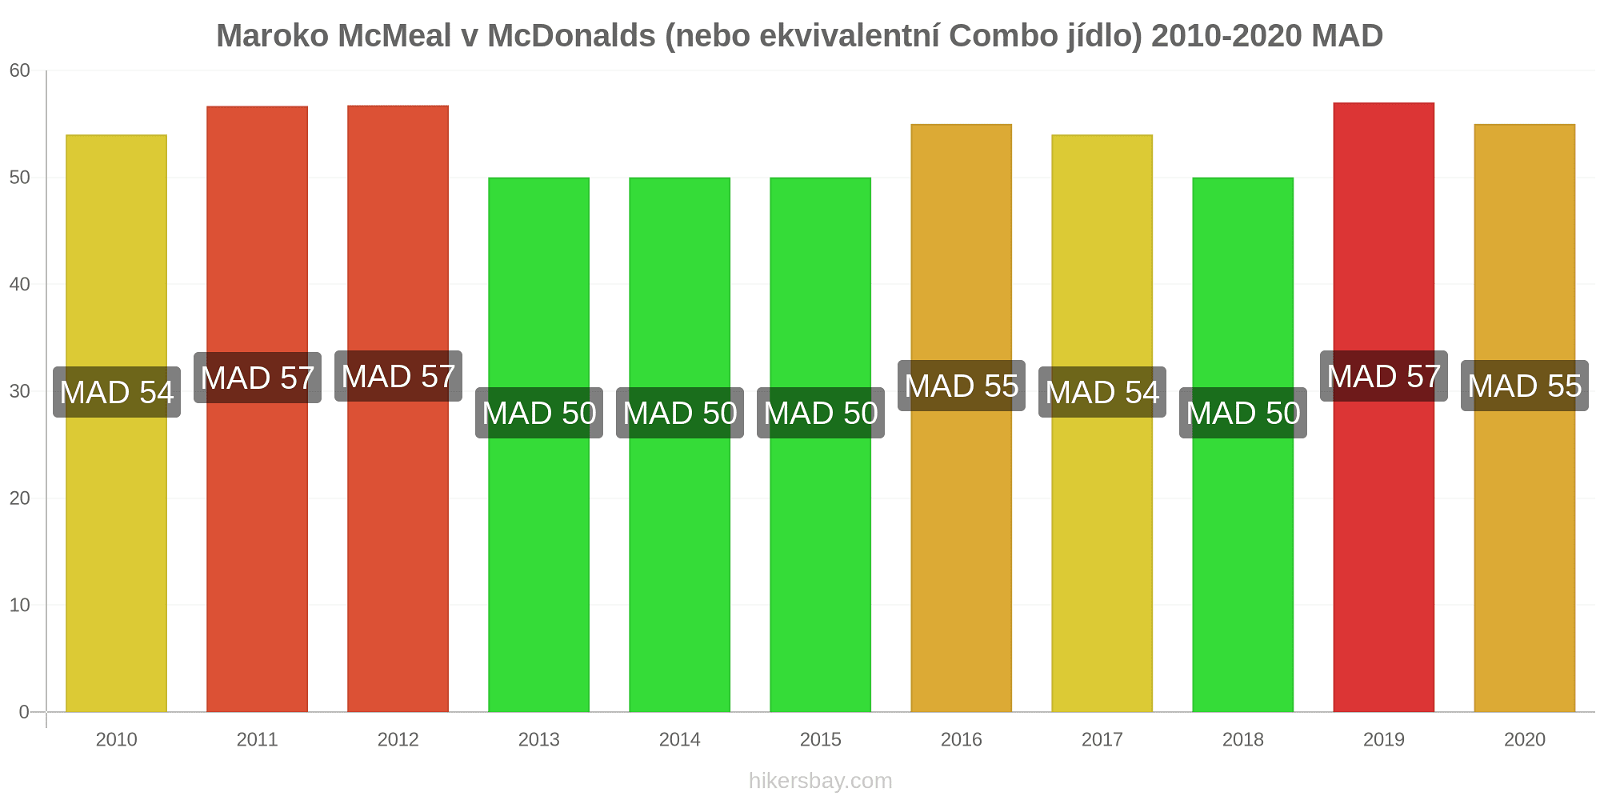 Maroko změny cen McMeal v McDonalds (nebo ekvivalentní Combo jídlo) hikersbay.com